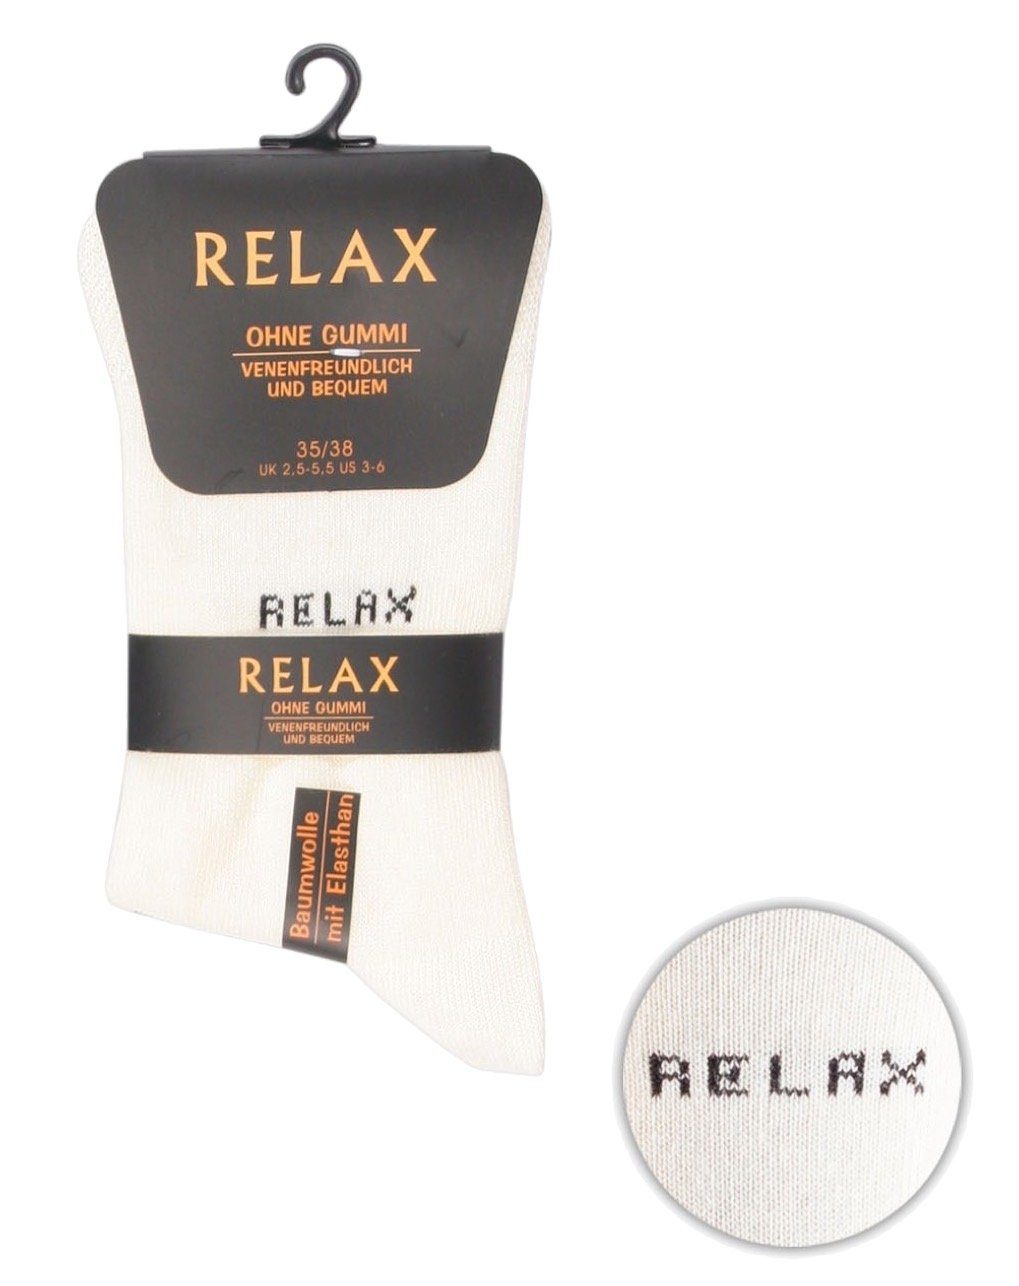 (8-Paar) Tragekomfort Socken atmungsaktiv Relax underwear Socken hoher Damen Cocain Vorteilspack